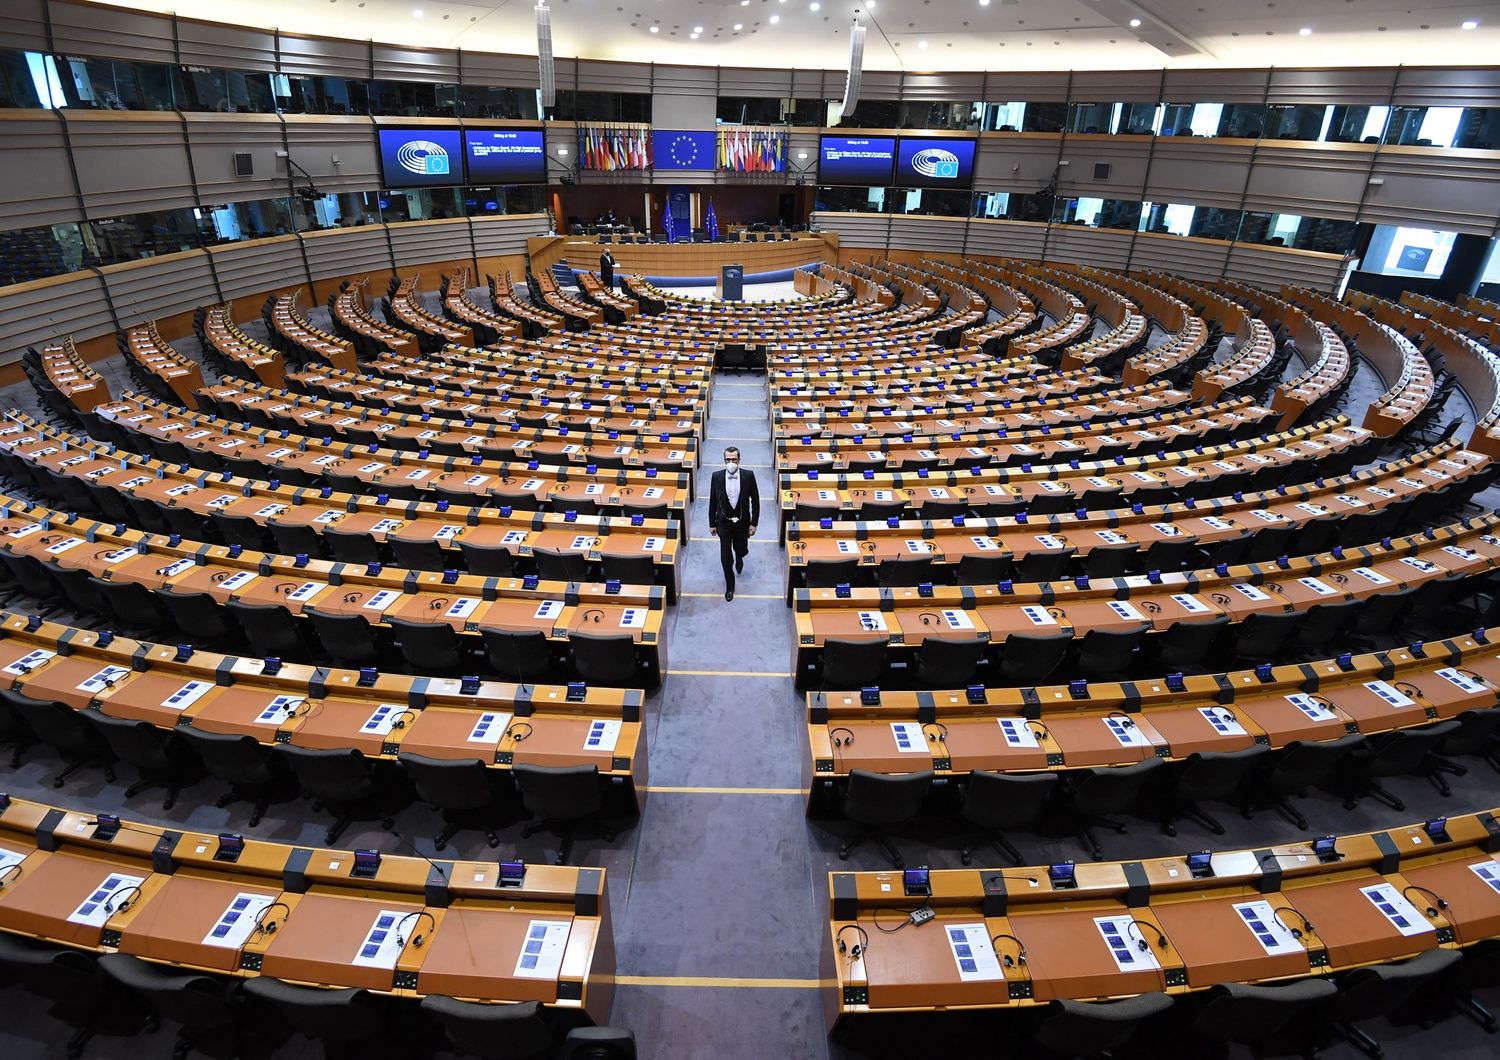 L'aula del Parlamento europeo